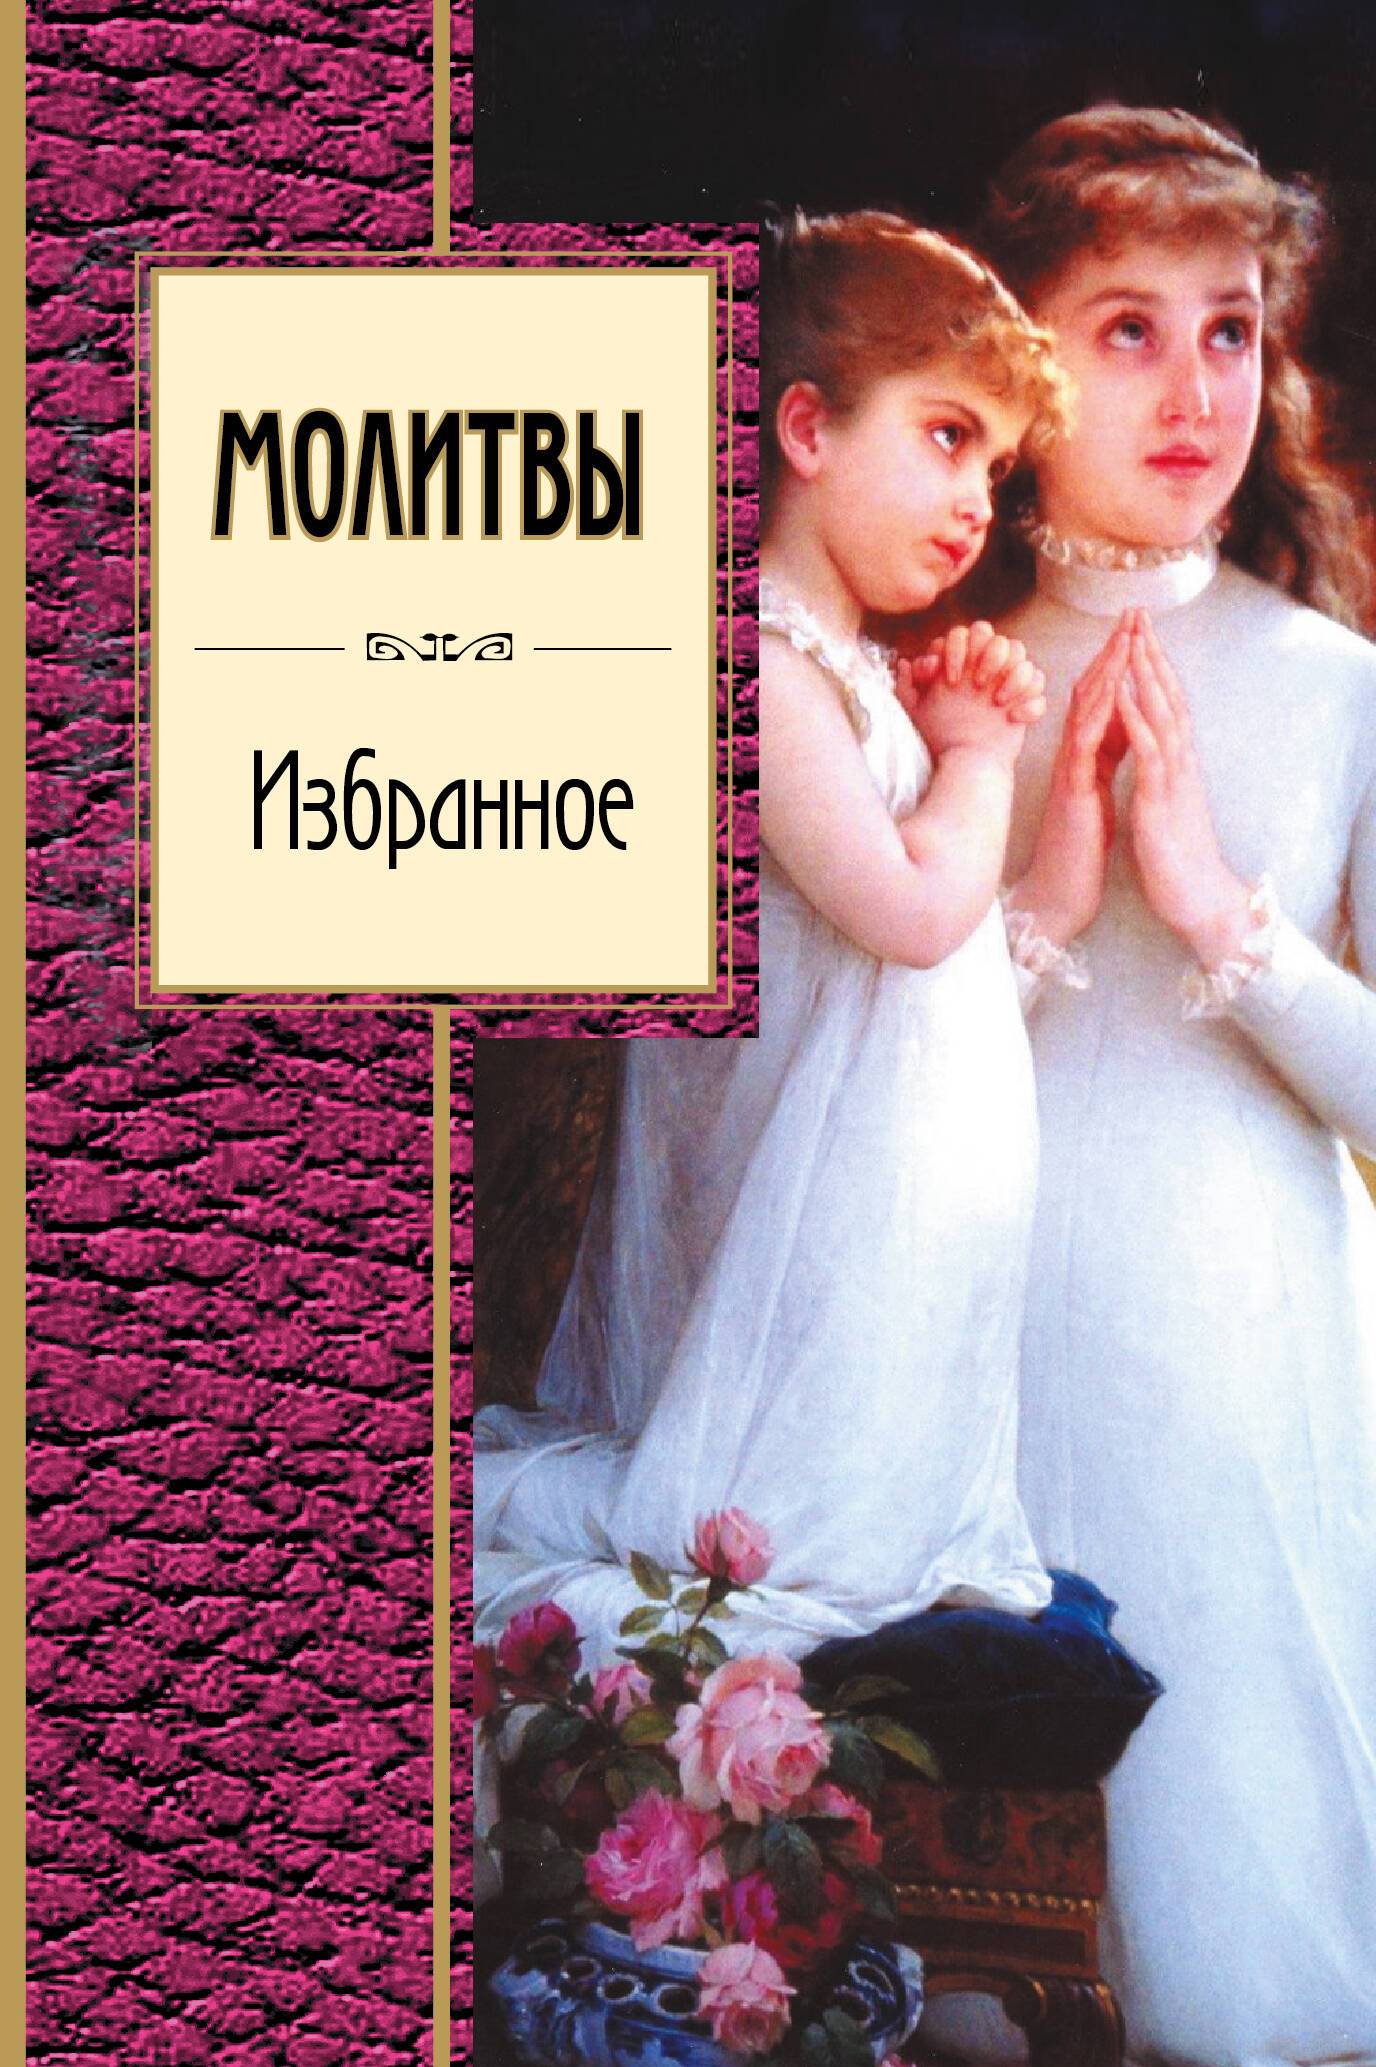 мой сидур избранные молитвы для детей Коровин Владимир Леонидович Молитвы. Избранное